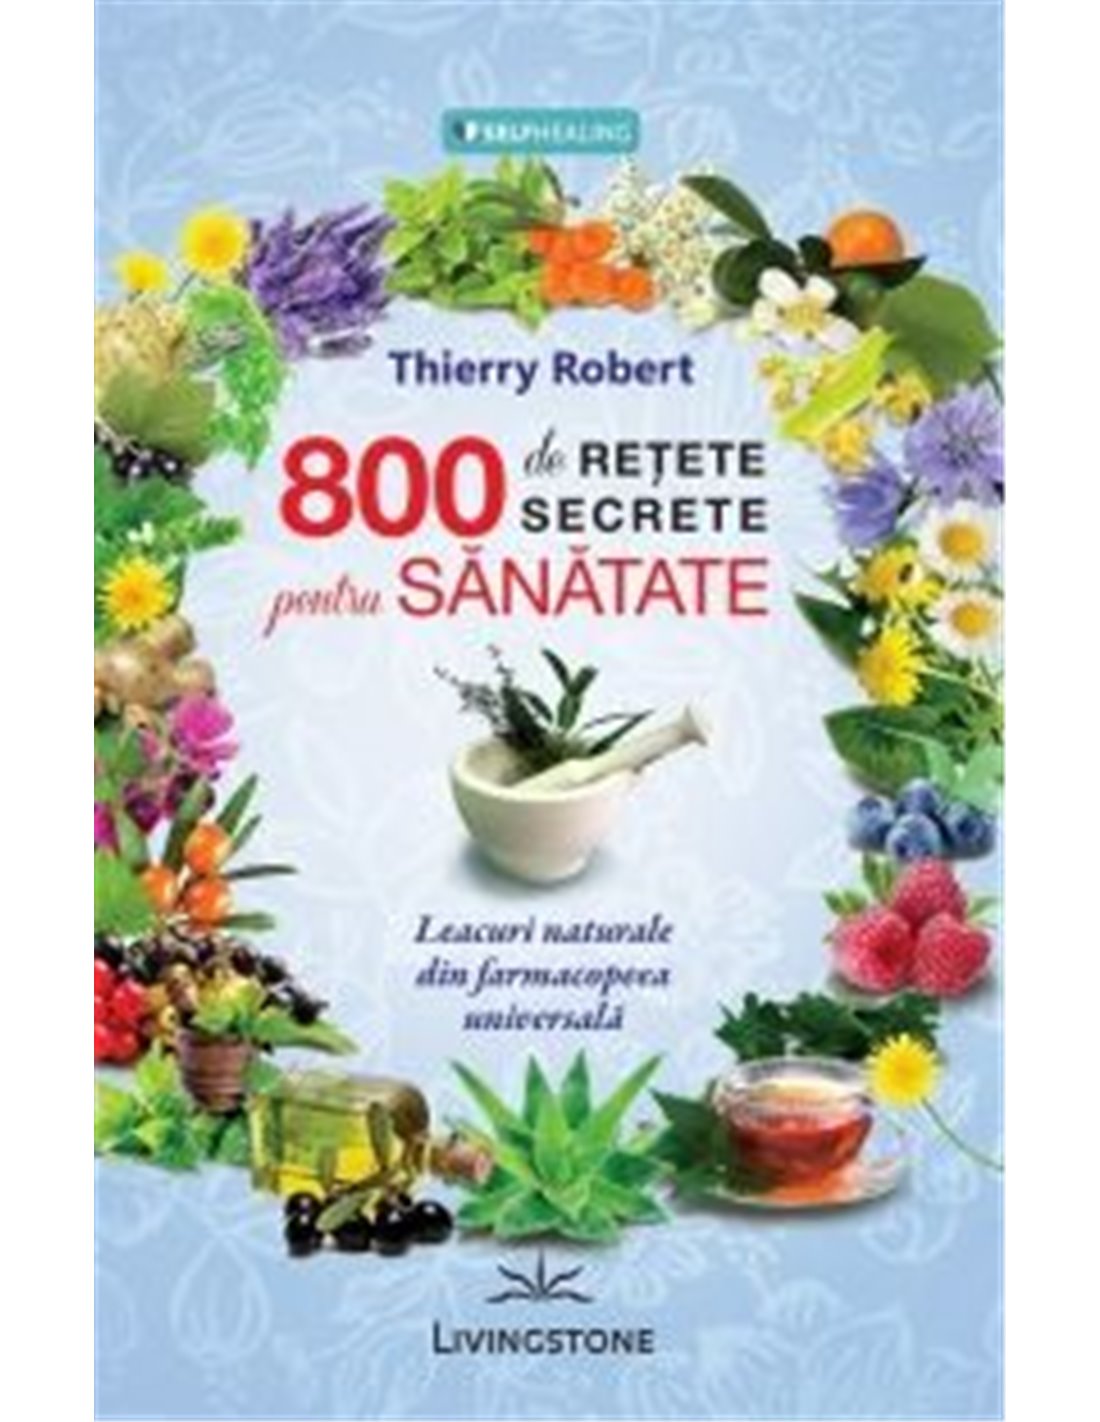 800 de reţete secrete pentru sănătate - Thierry Robert | Editura Livingstone